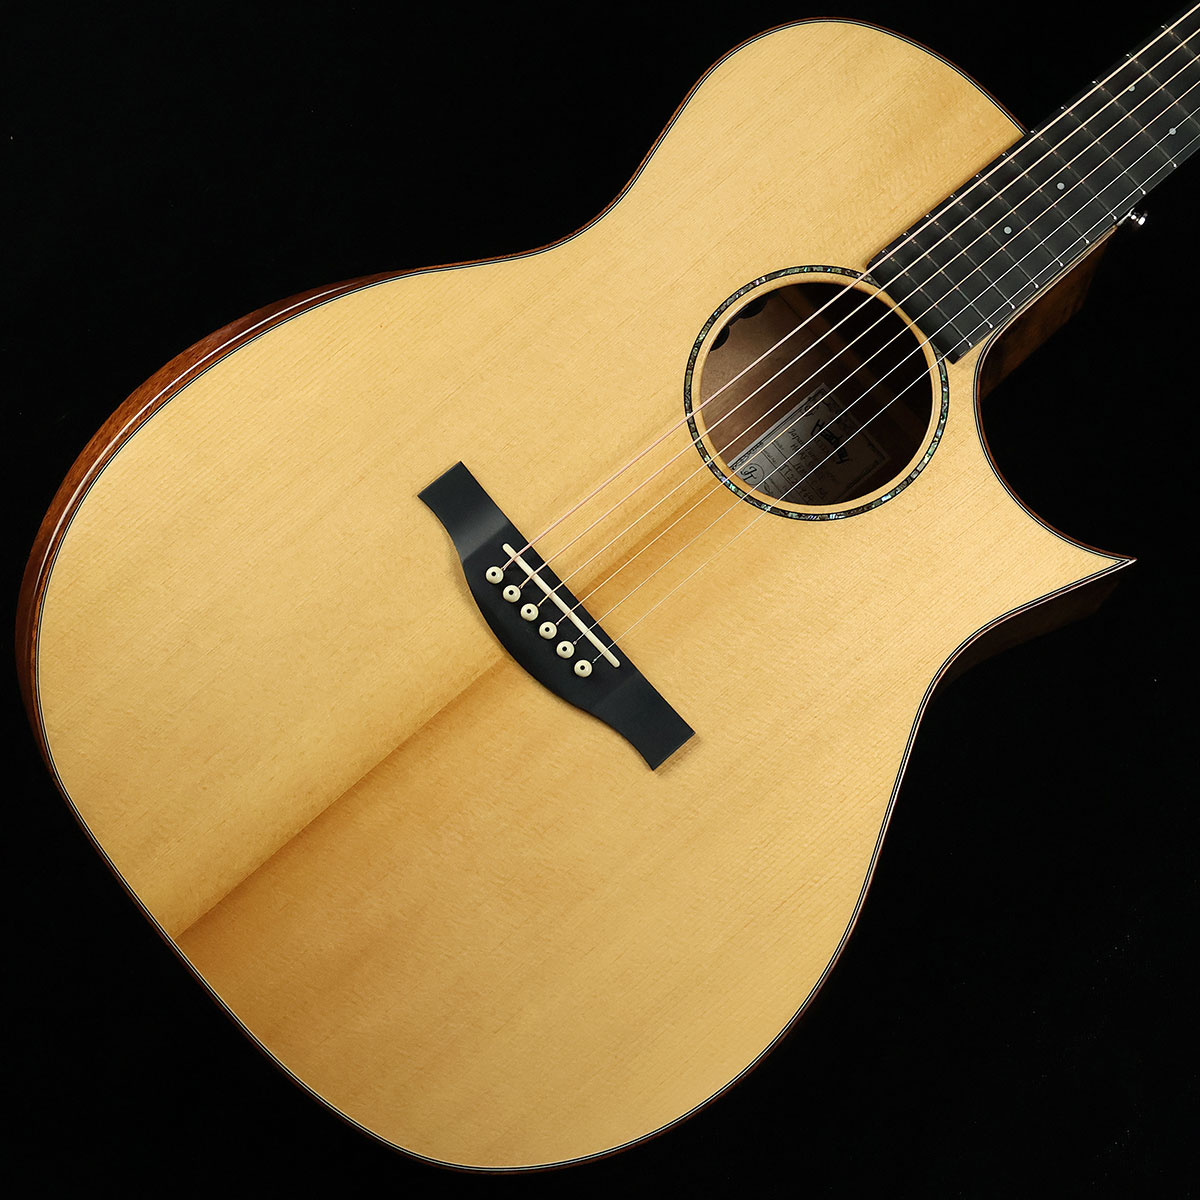 18,500円HEADWAY HGAF-5100SE アコギ アコースティックギター